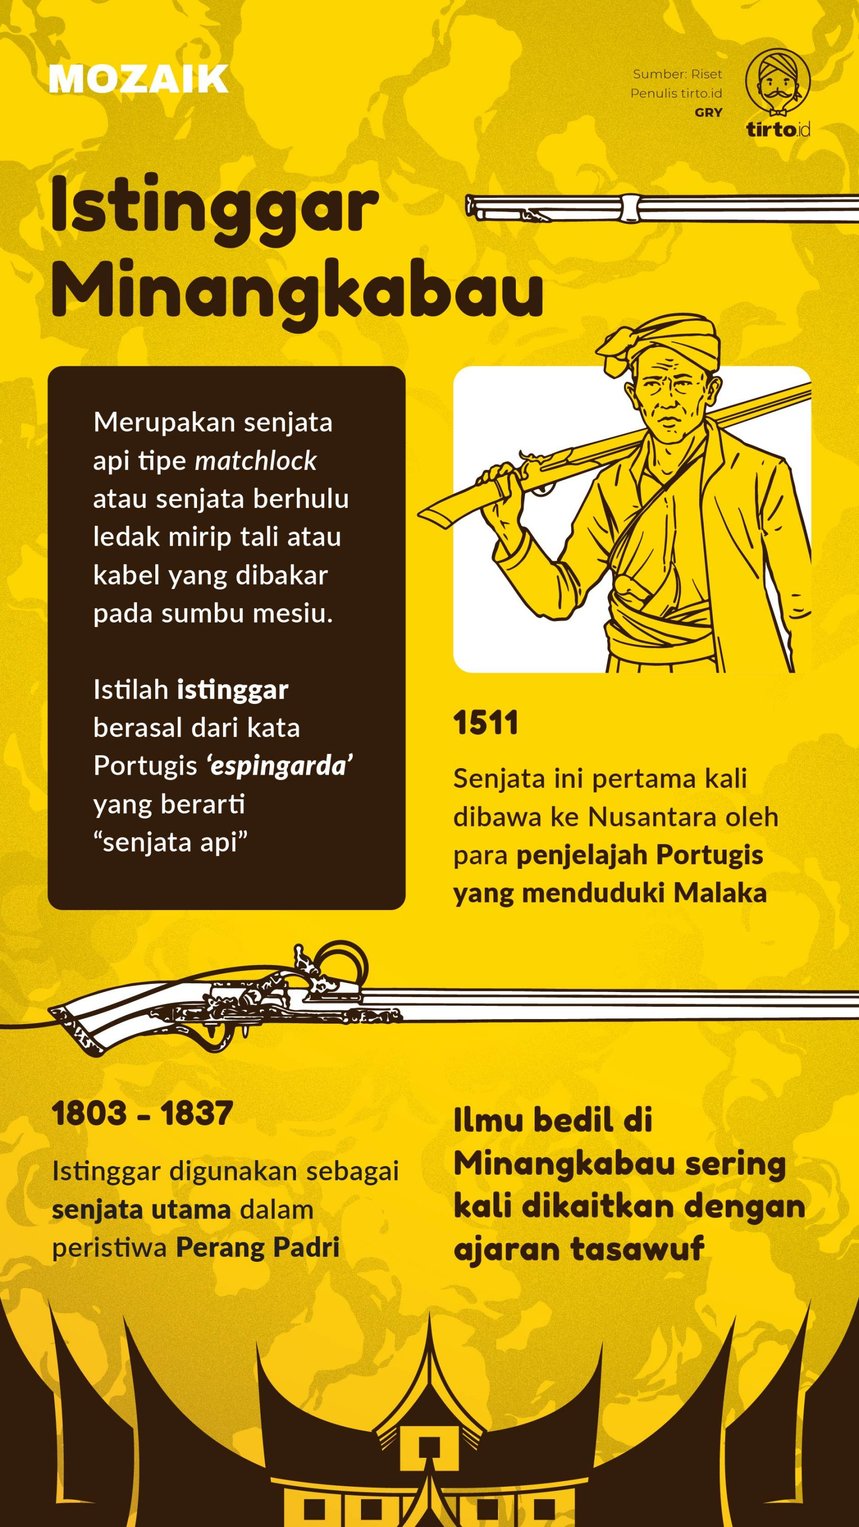 Infografik Mozaik Istinggar Minangkabau